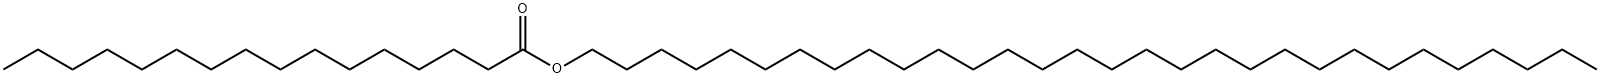 ヘキサデカン酸トリアコンチル 化学構造式